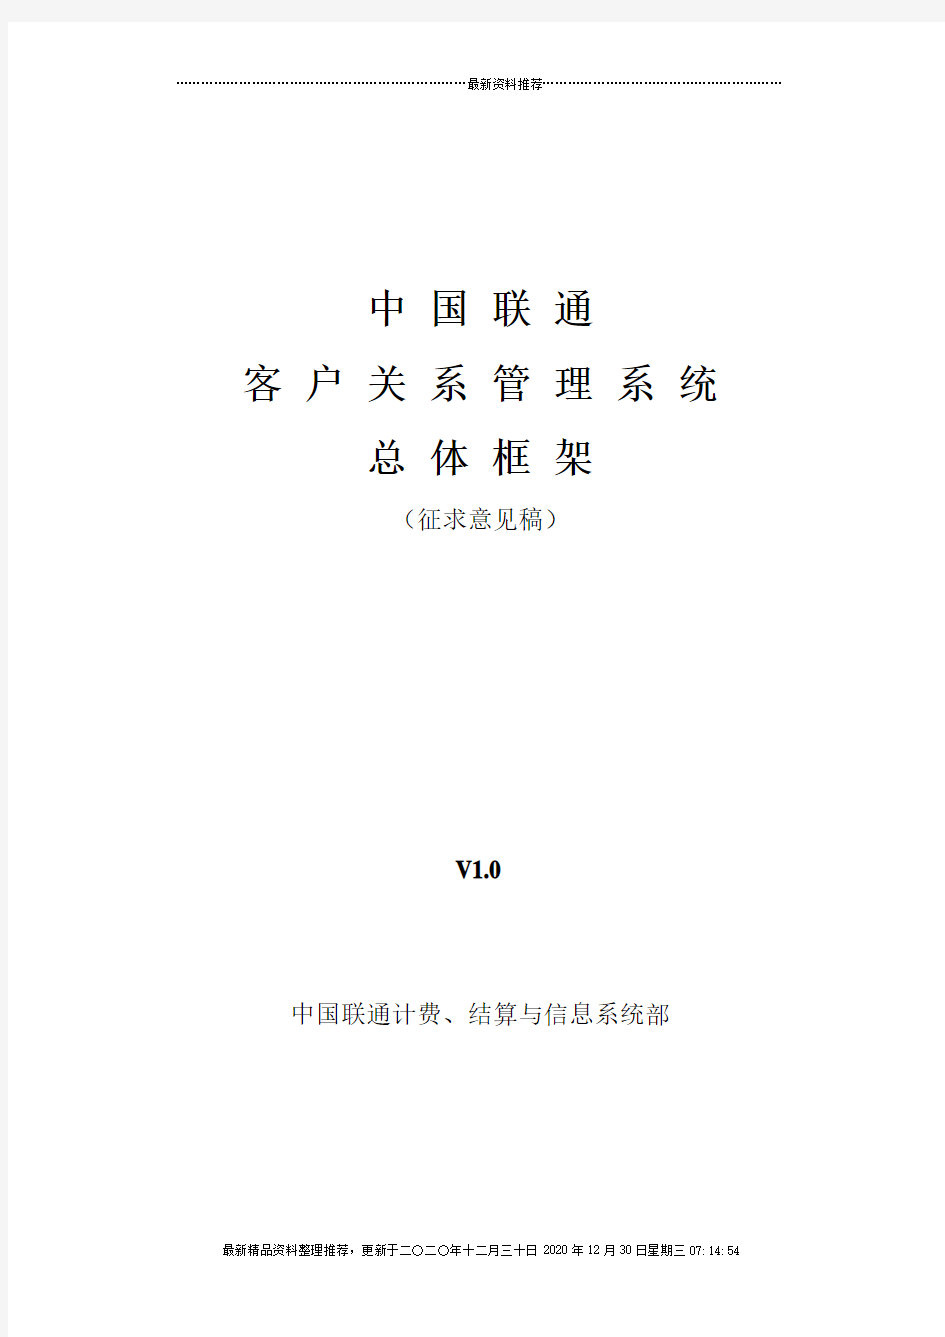 客户关系管理总体框架(征求意见稿)v1.00628(中国联通)